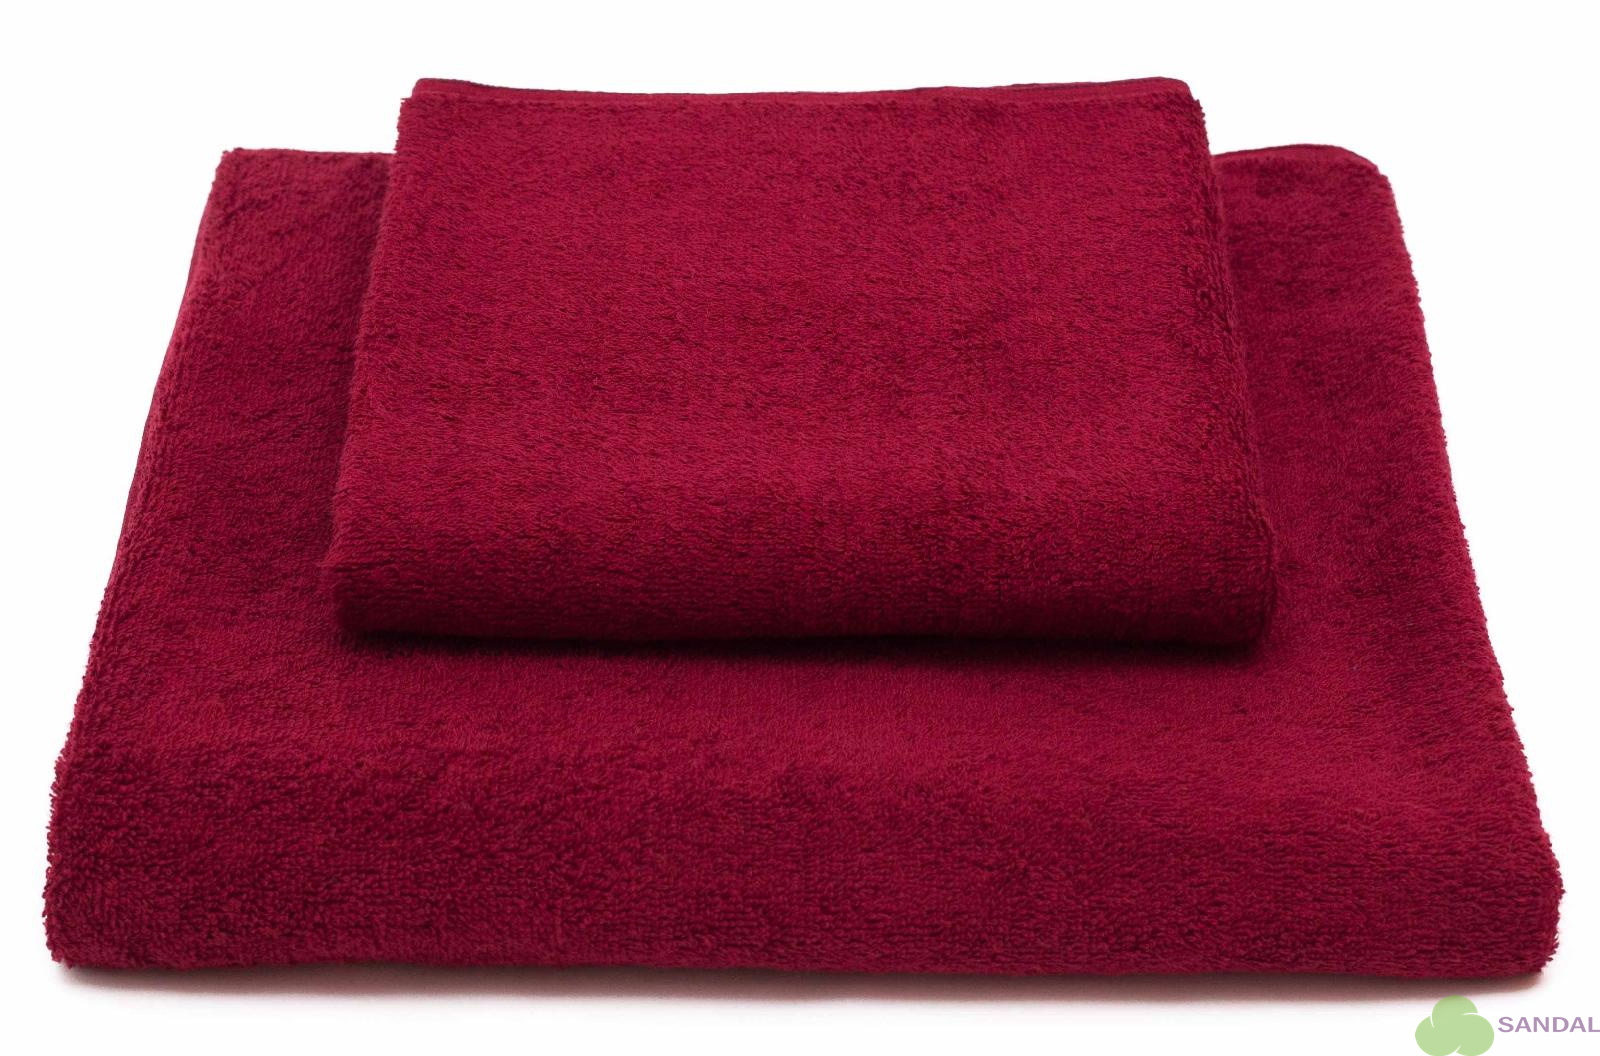 Набор махровых полотенец TJ из 2-х штук (50*90, 70*140 см.). Пл. 400 гр. Цвет - Бордовый.